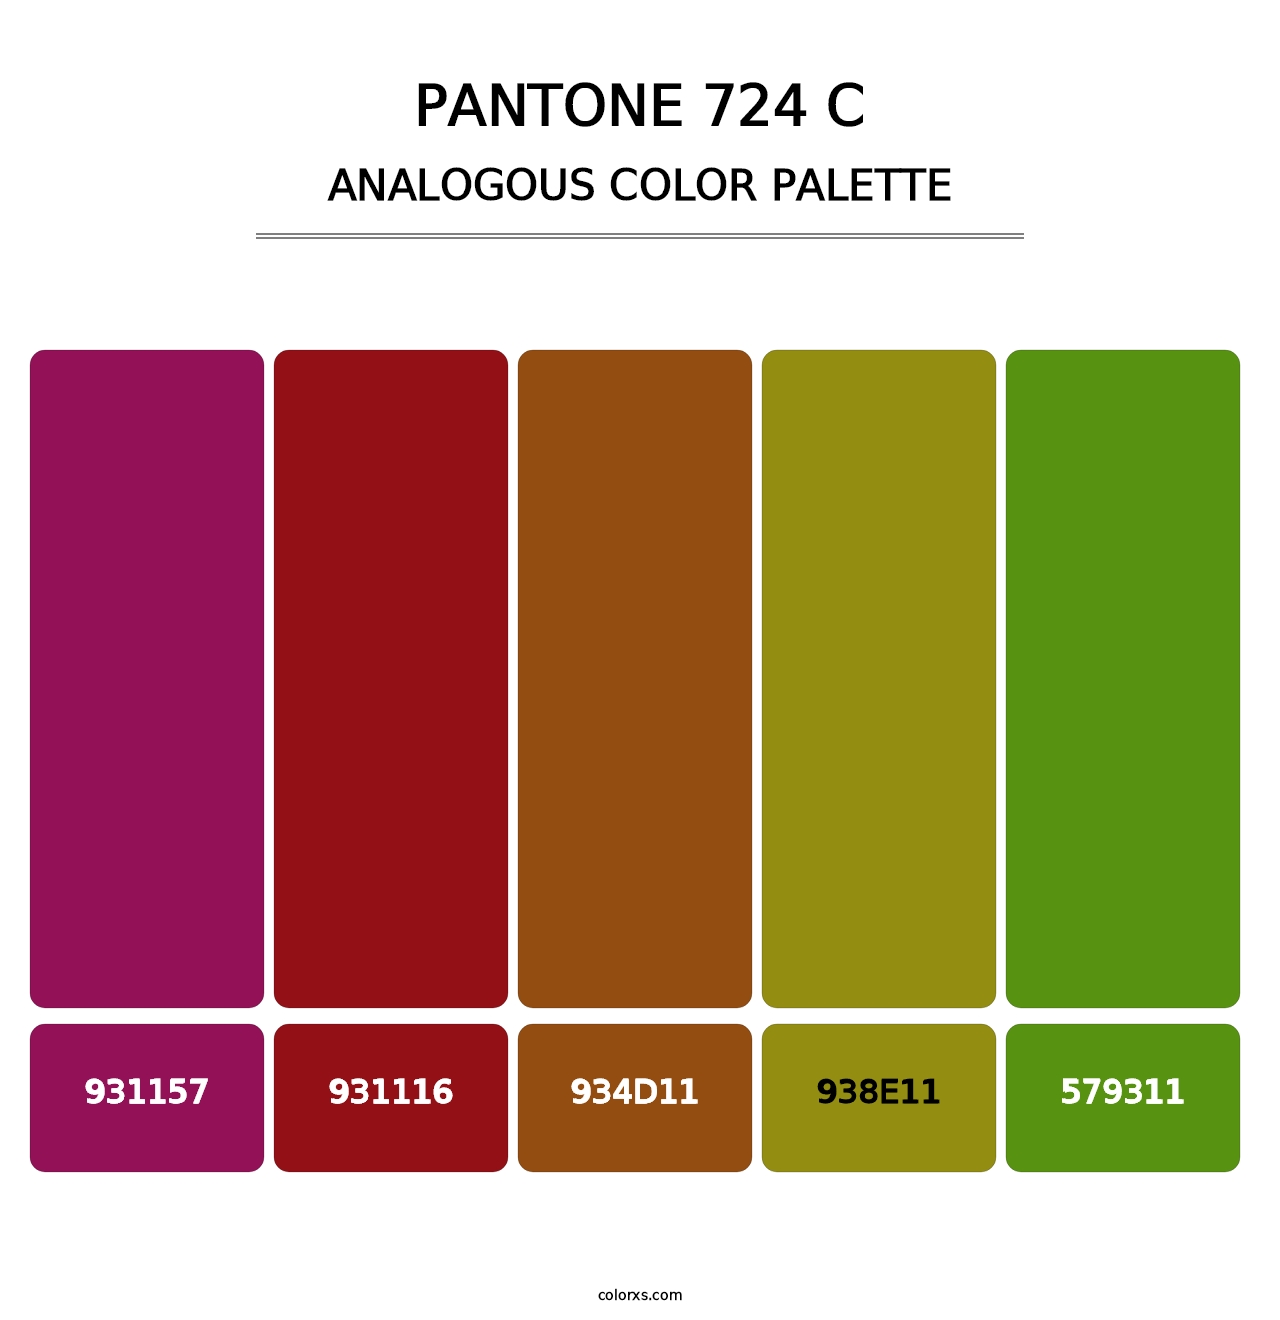 PANTONE 724 C - Analogous Color Palette